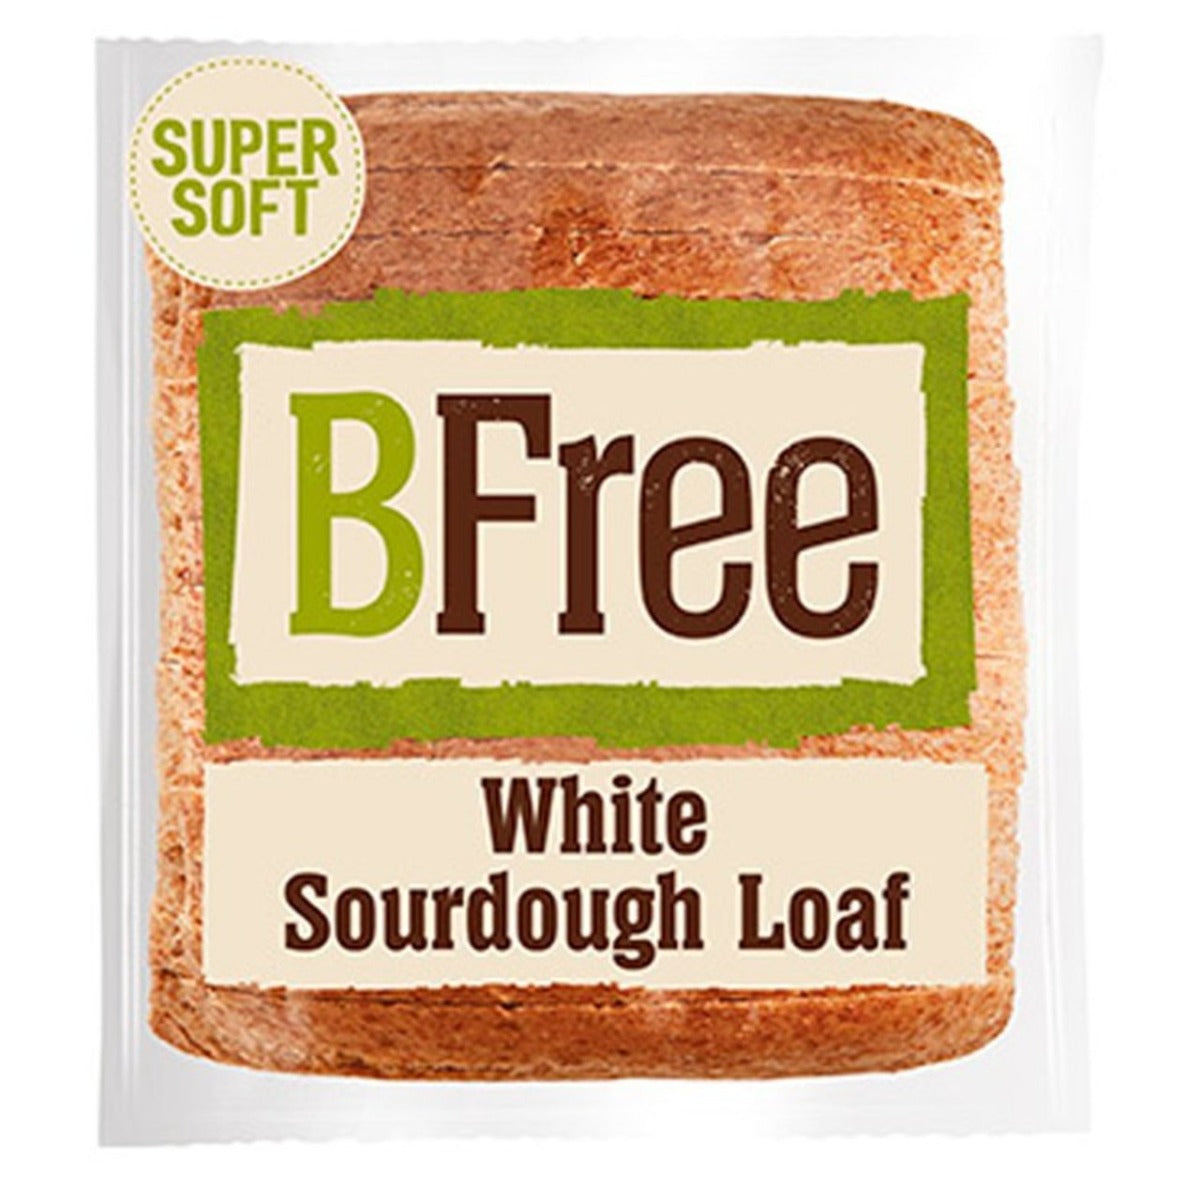 BFree White Sourdough Loaf 400g